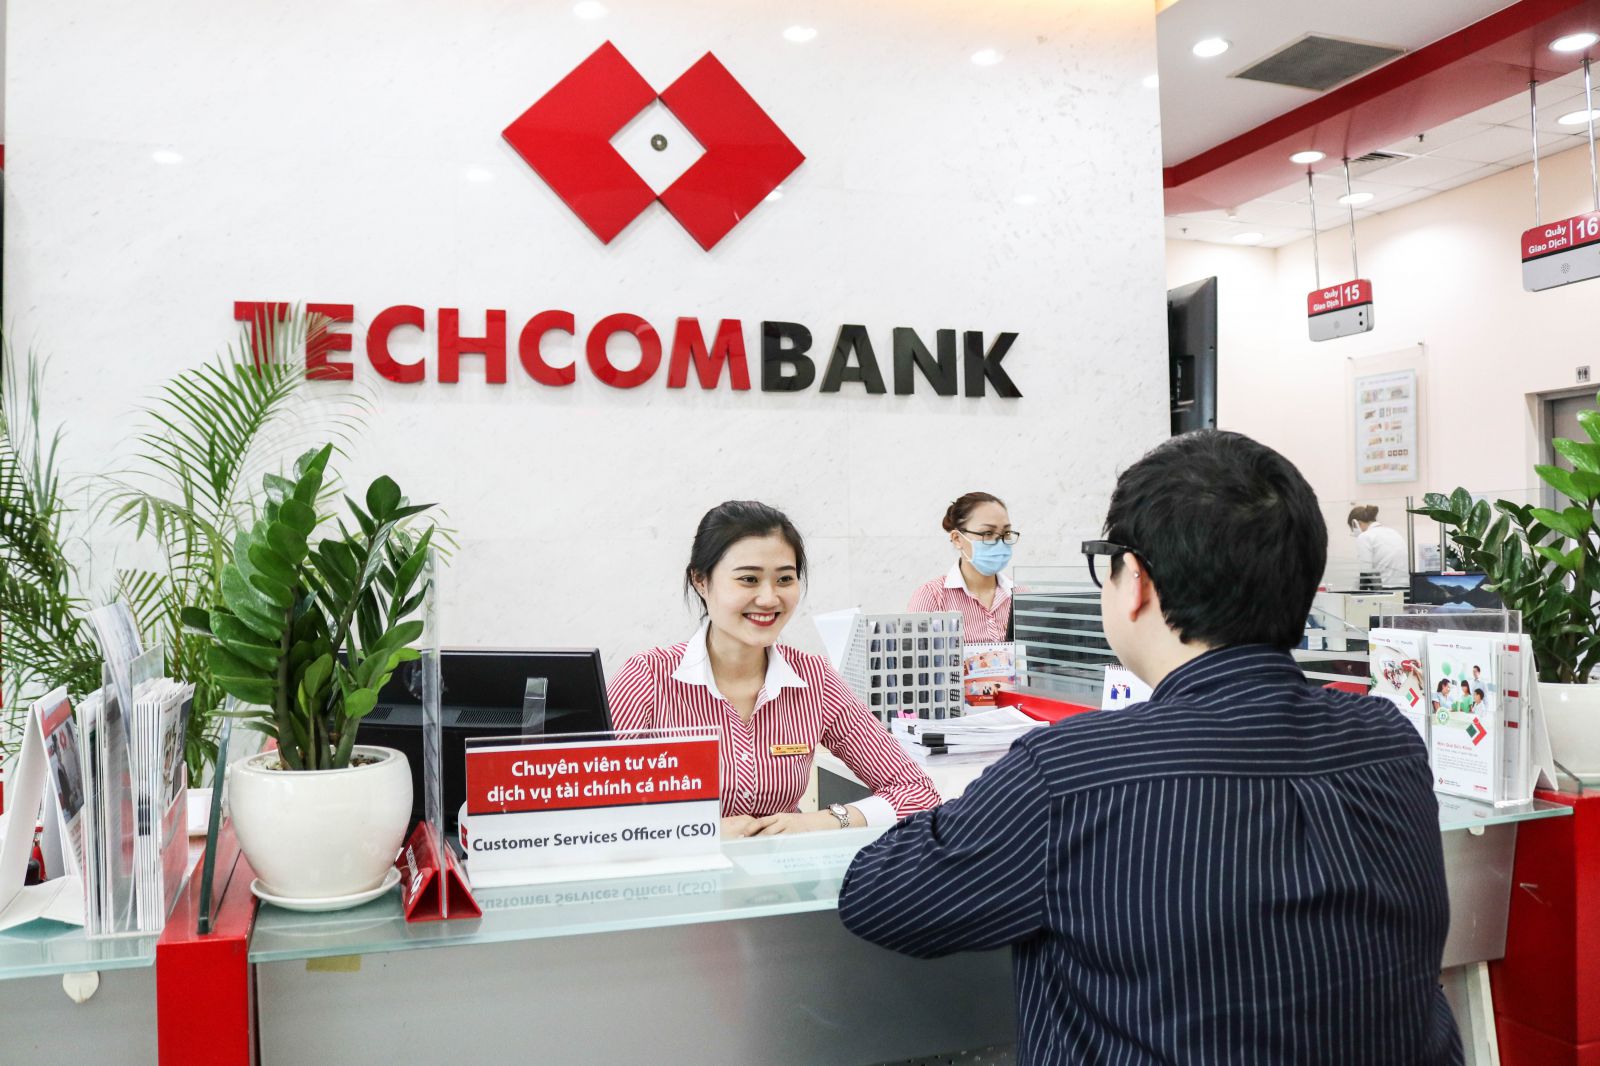 02 năm liên tiếpTechcombank được trao giải ngân hàng bán lẻ 